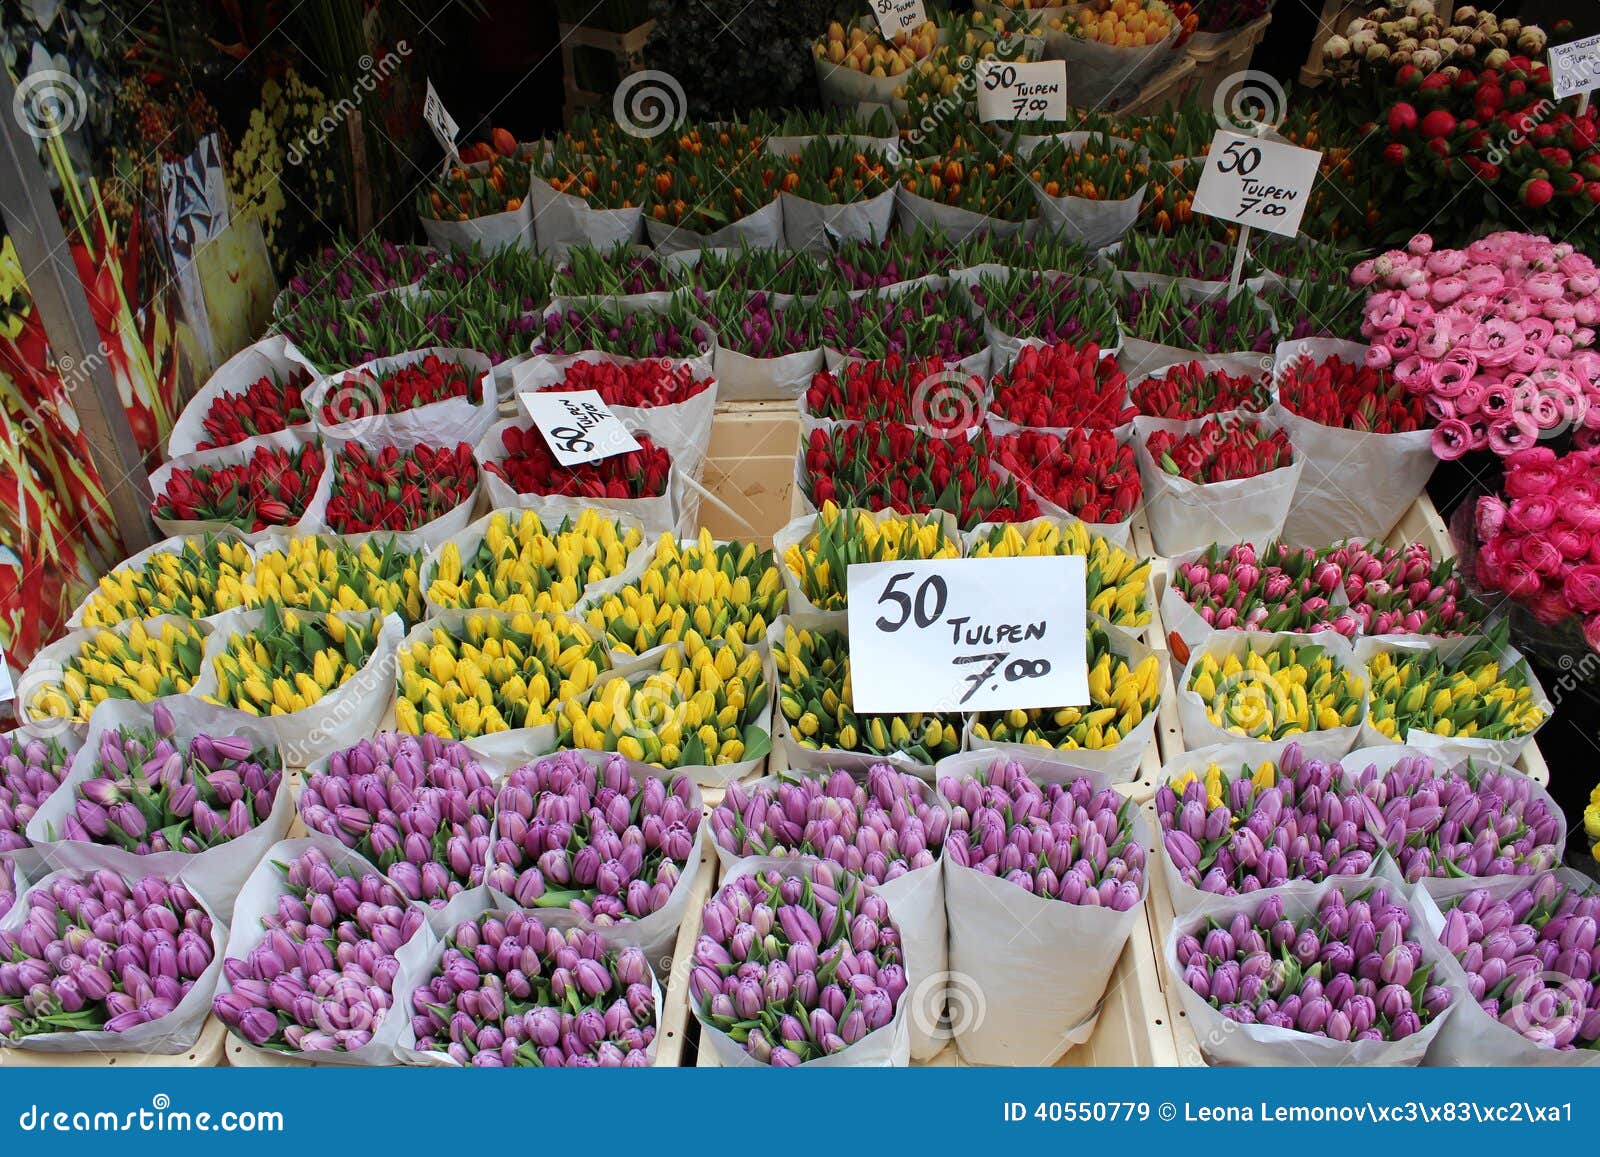 Сколько стоят тюльпаны на рынке. Фуд Сити рынок цветы. Цветы фуд Сити тюльпаны. Цветочный рынок в Амстердаме. Цветочный магазин в фуд Сити.